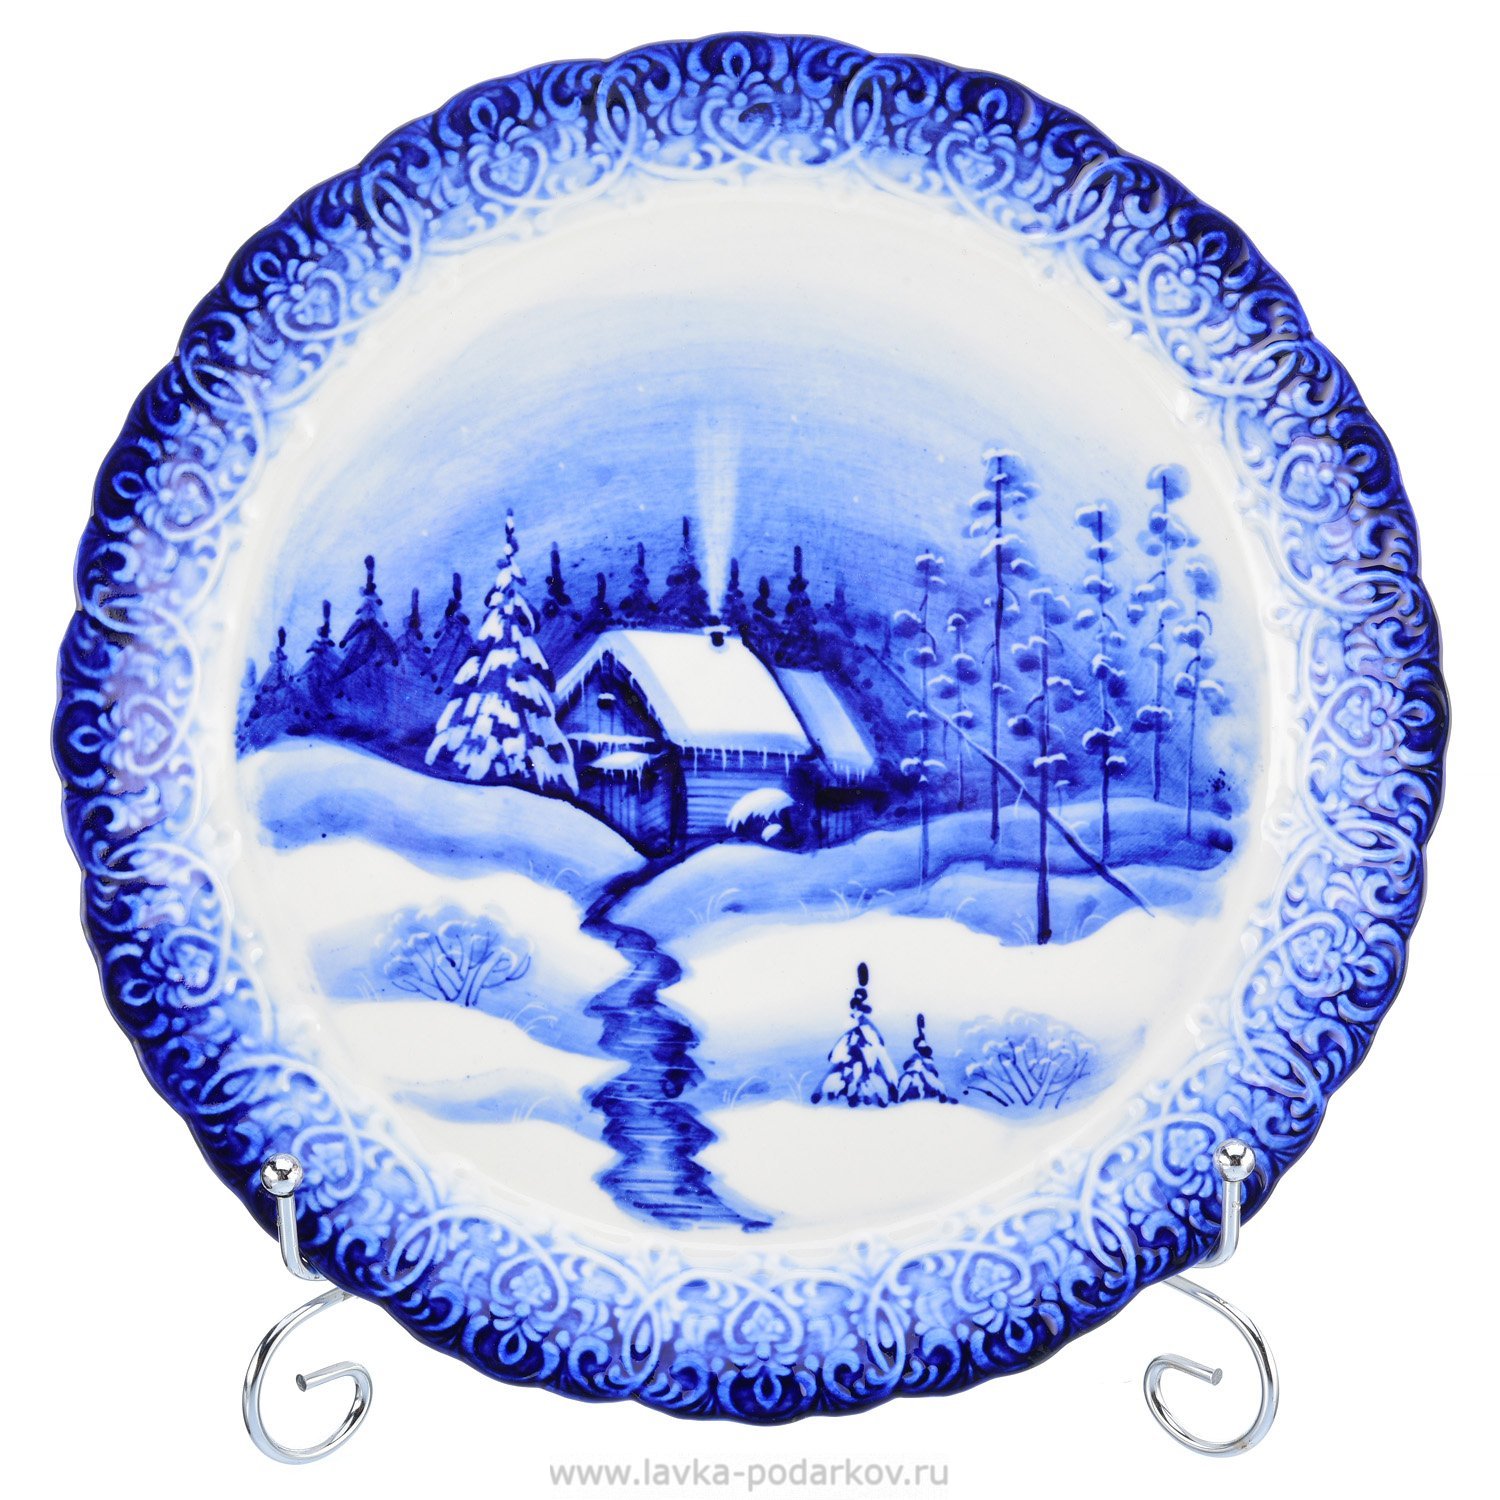 Зимний пейзаж на тарелке